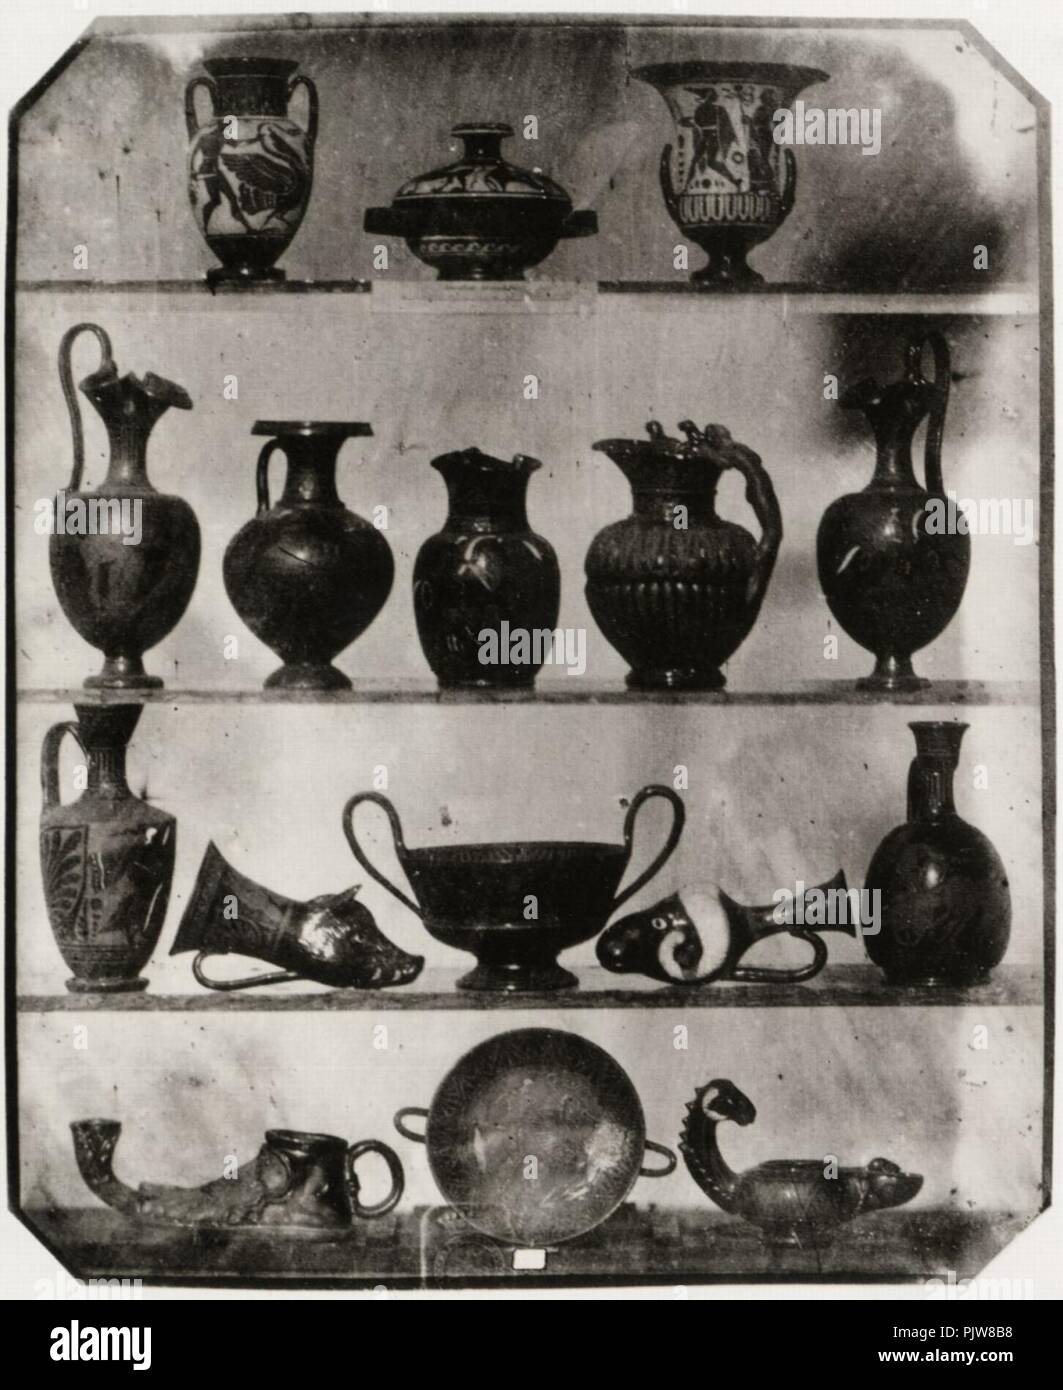 Belitski, Ludwig - 16 Antike griechische Vasen, Lampen und andere Gefäße aus gebranntem Ton mit Malerei. 1-3 Naturgrösse, Liegnitz. Stock Photo